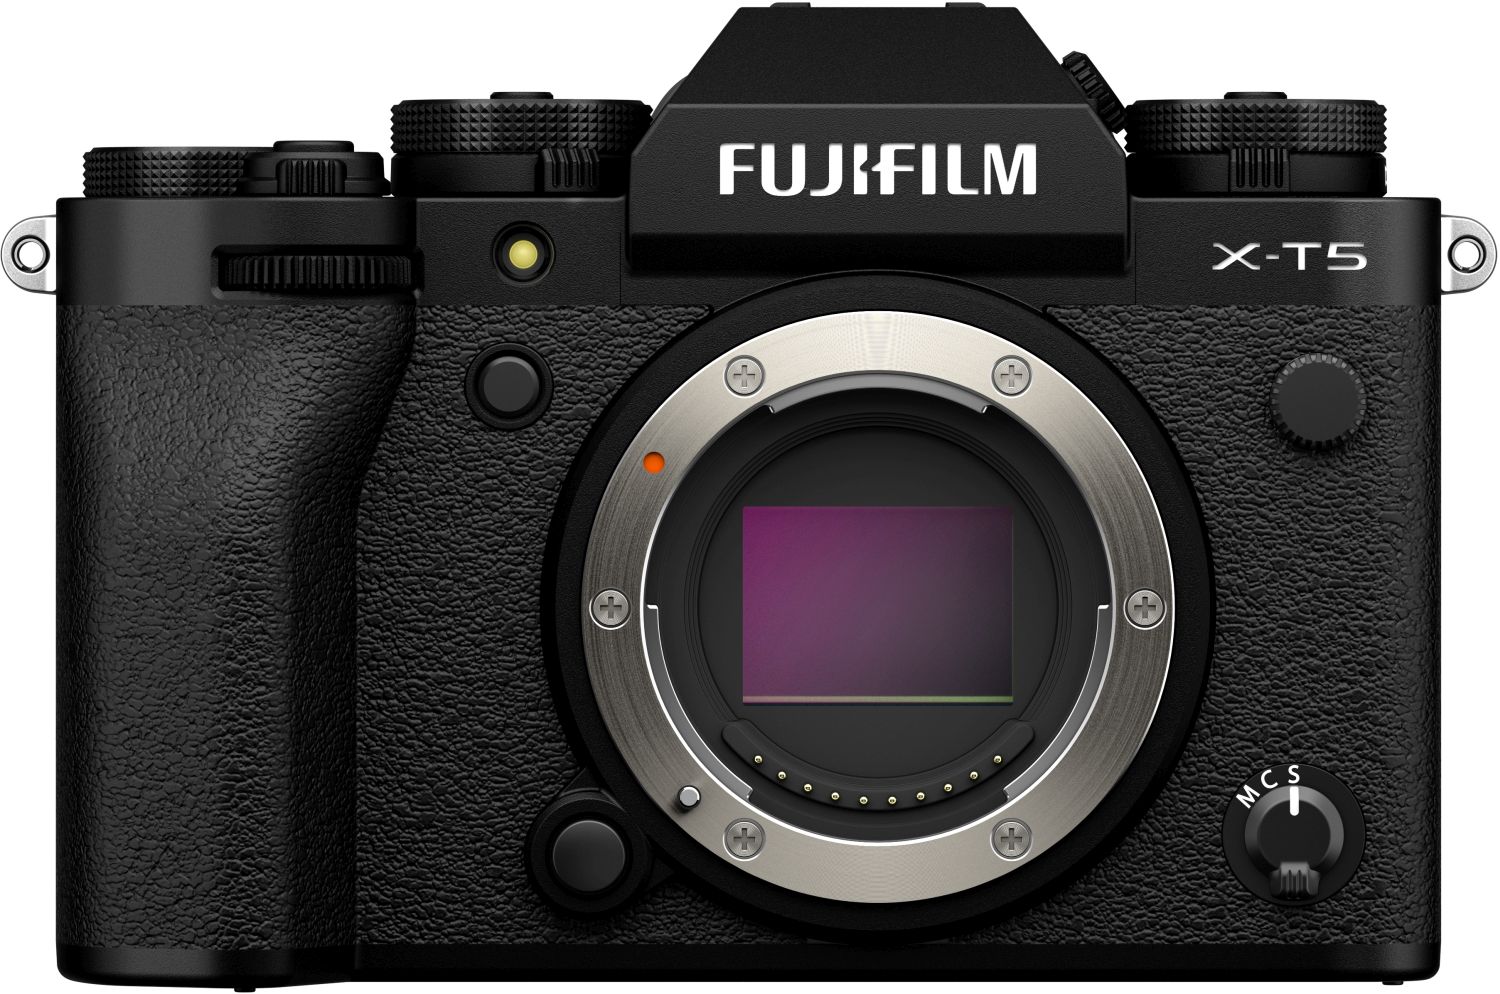 Fujifilm X-T5 + XF18-55mm f2.8-4 R LM OIS black - Foto Erhardt